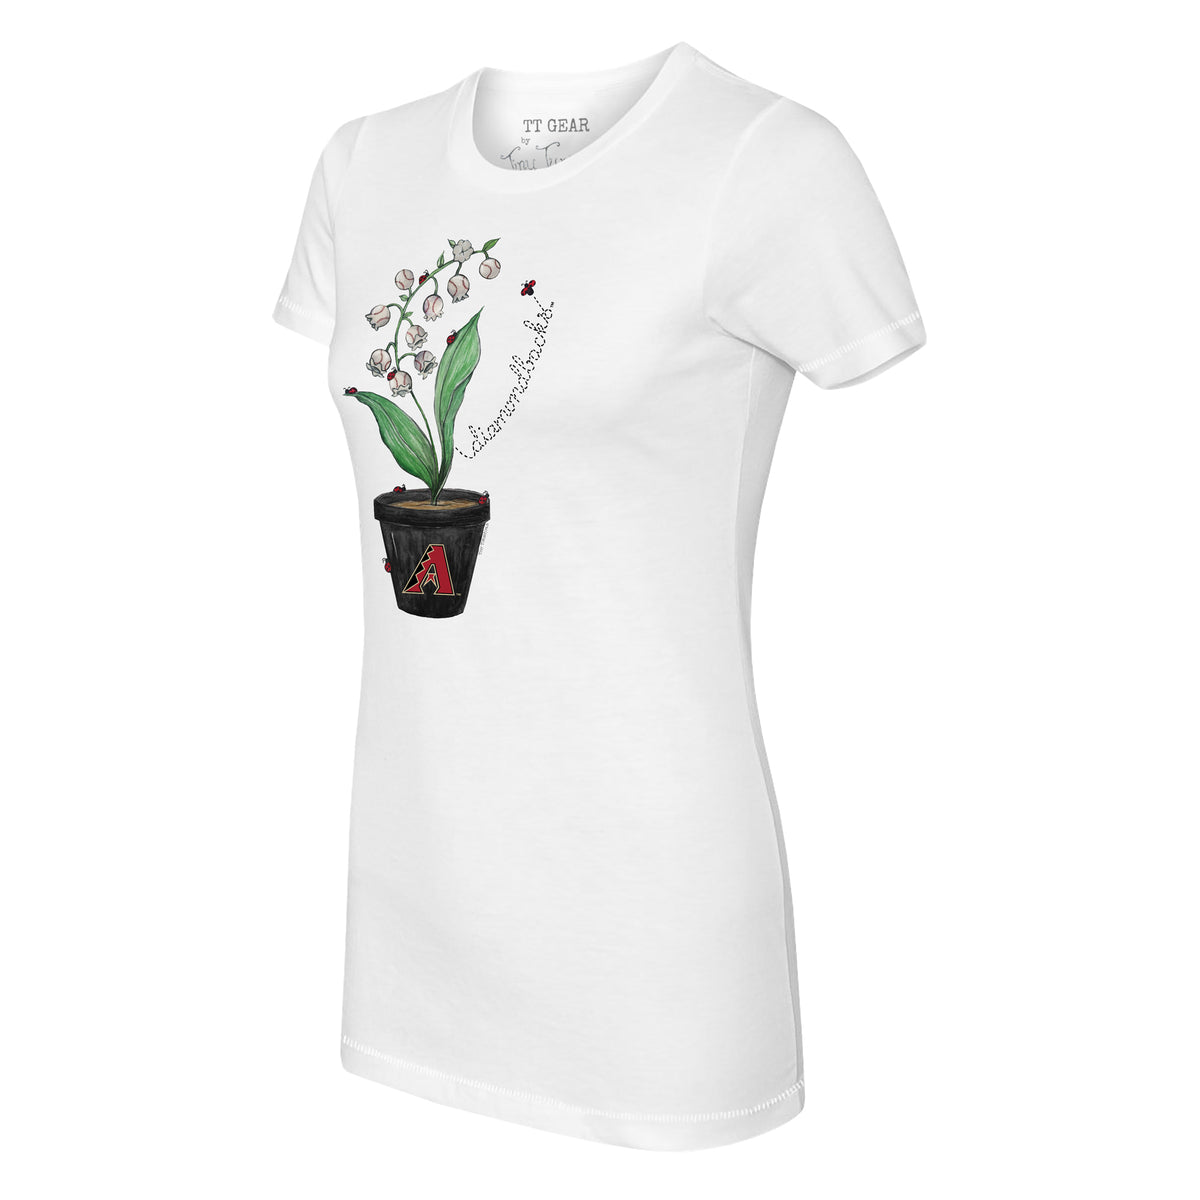 Arizona Diamondbacks Ladybug Tee Shirt